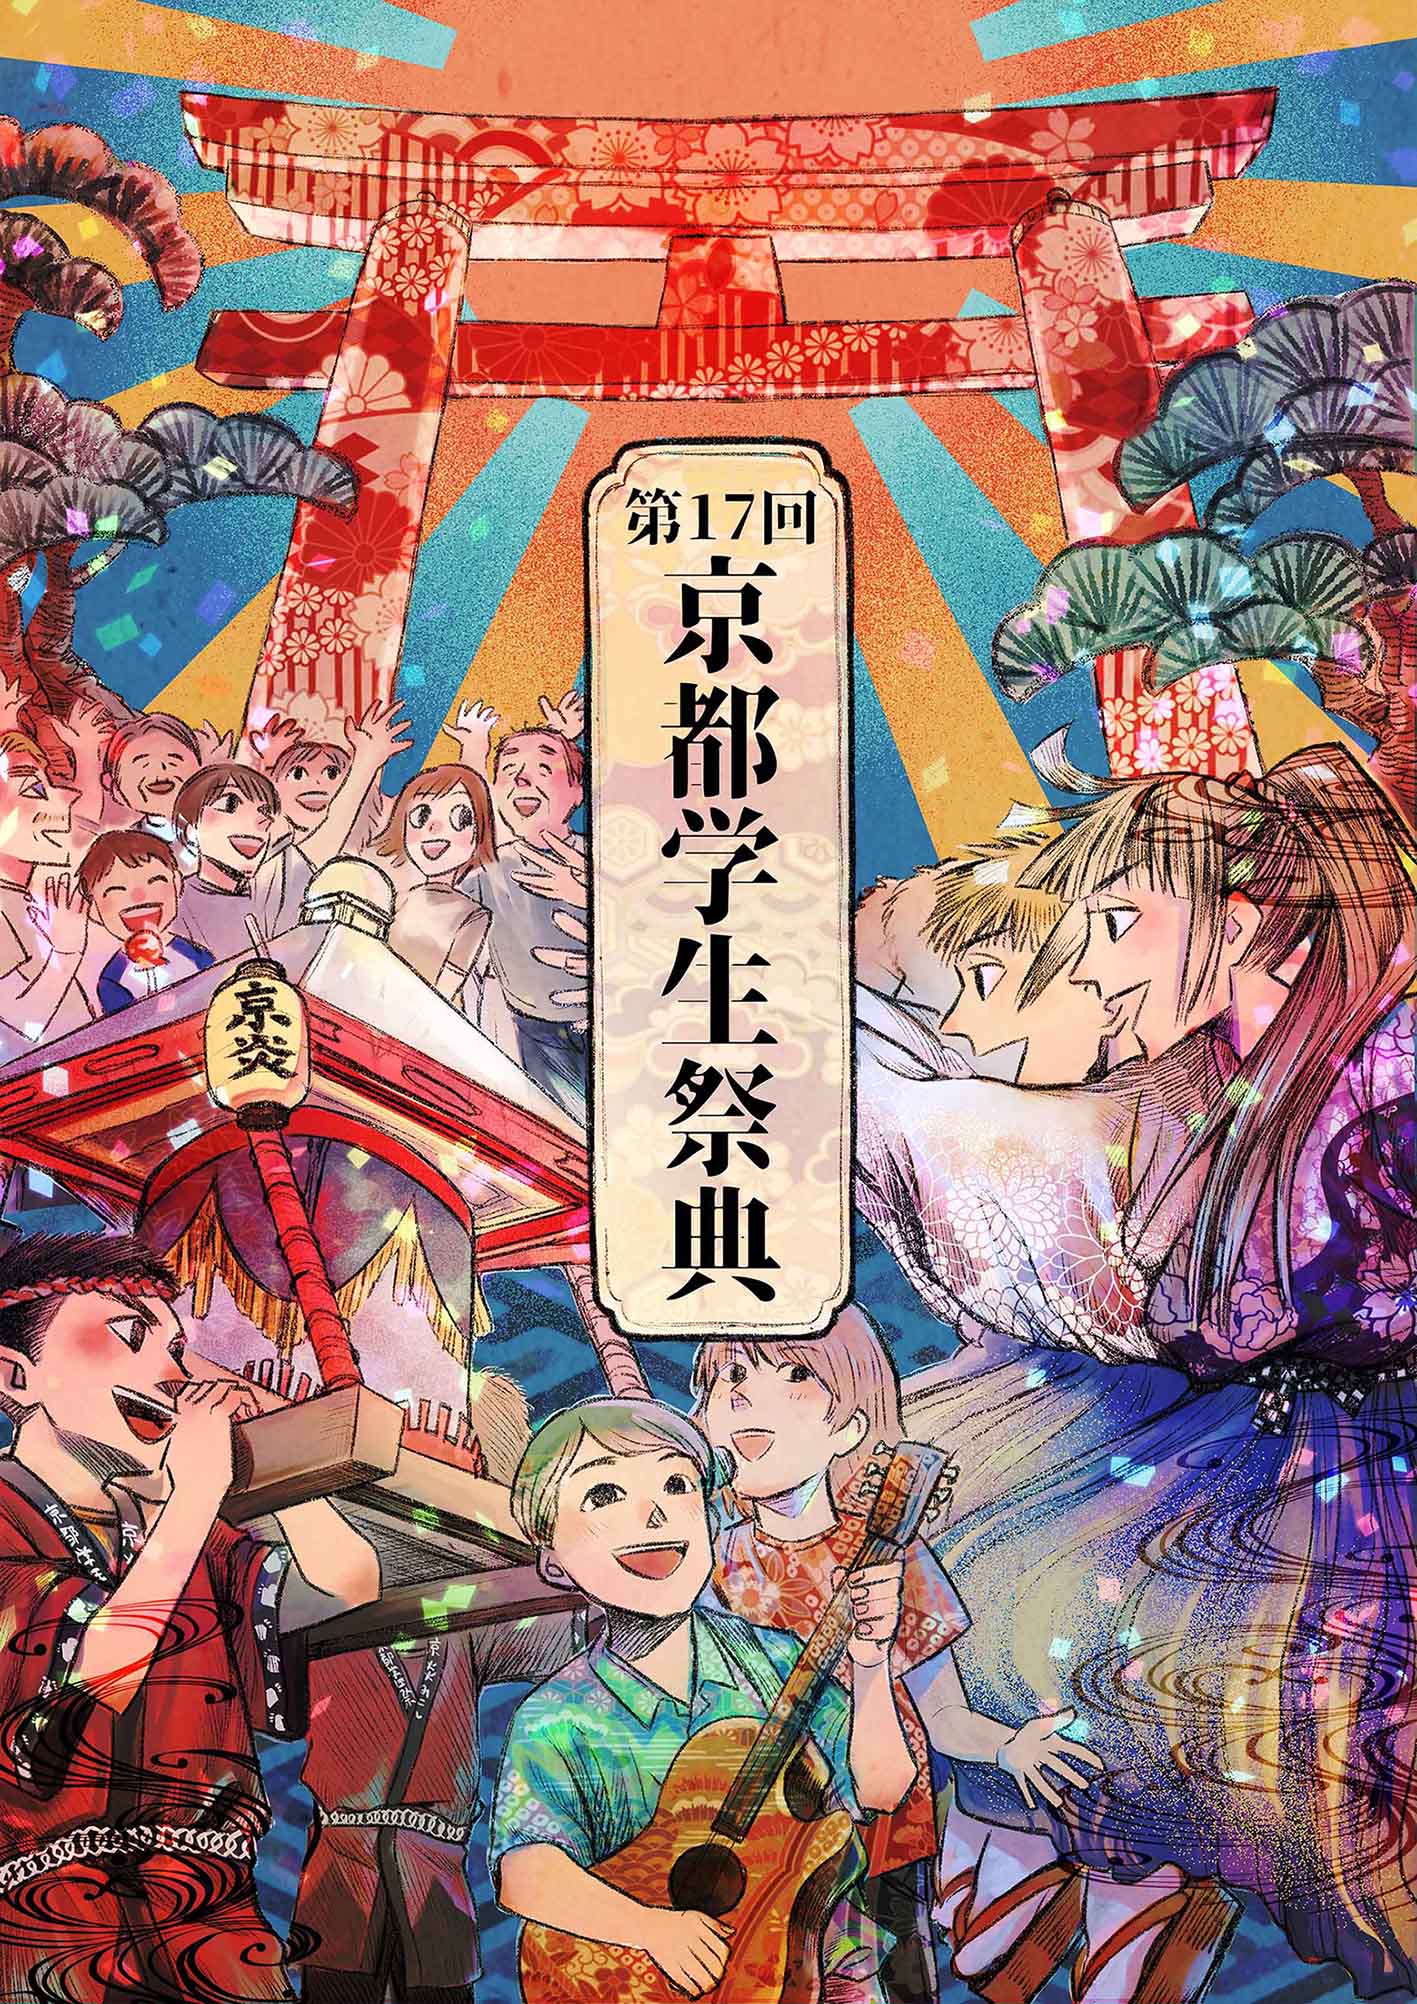 「第17回 京都学生祭典」メインビジュアルにストーリーマンガコース2年生 小畠瑠衣さんの作品が採用